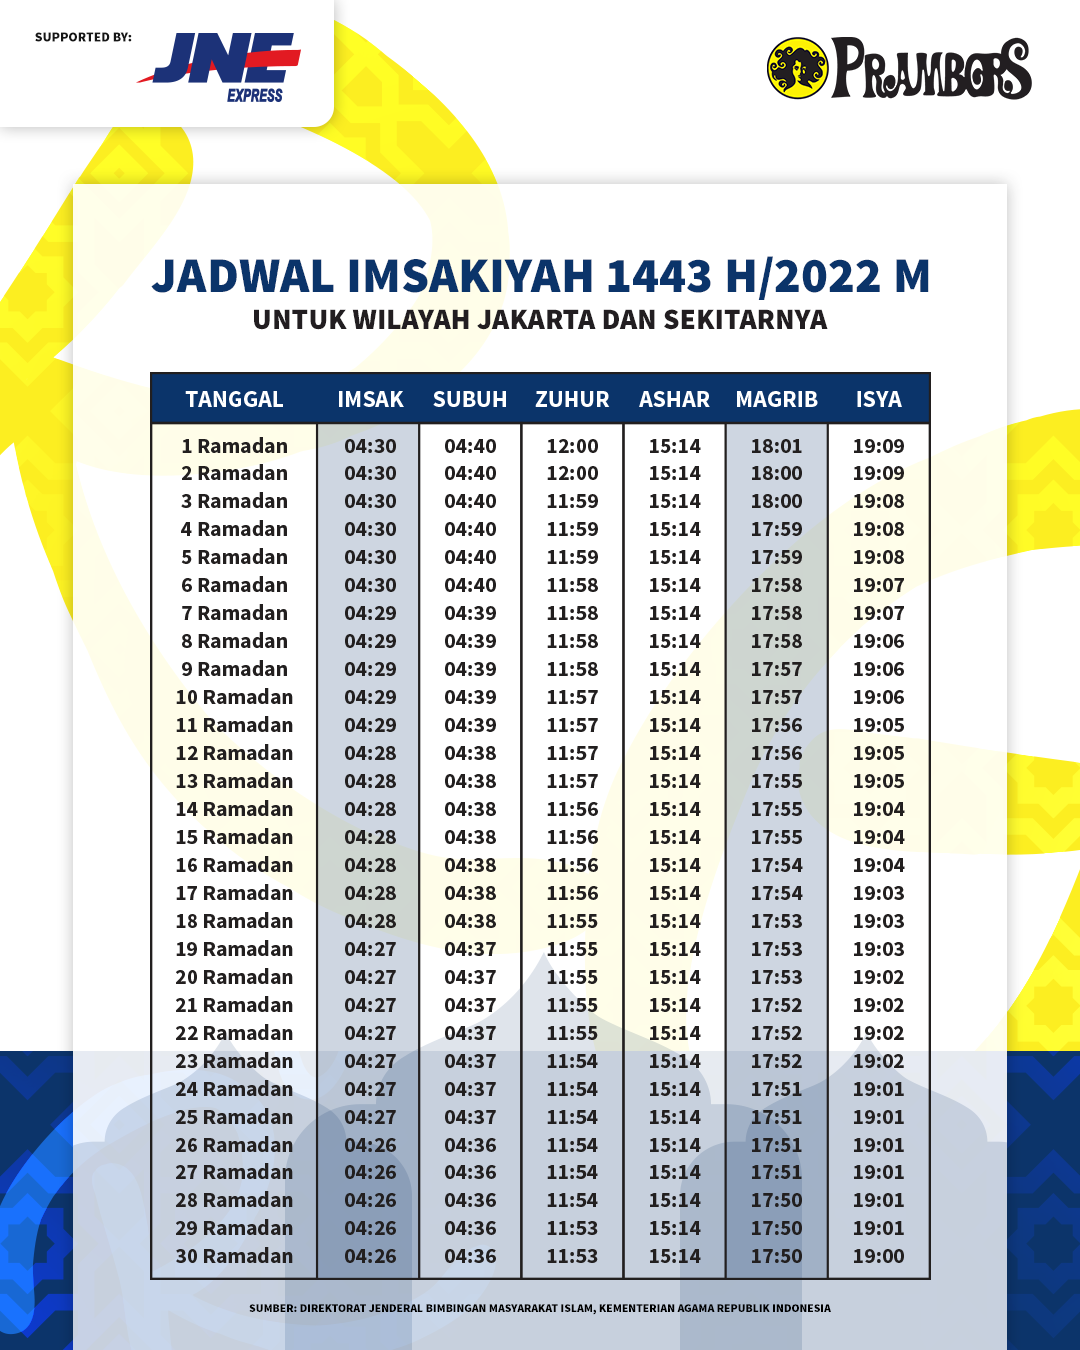 Jadwal Imsakiyah 2022 Jakarta - JNE